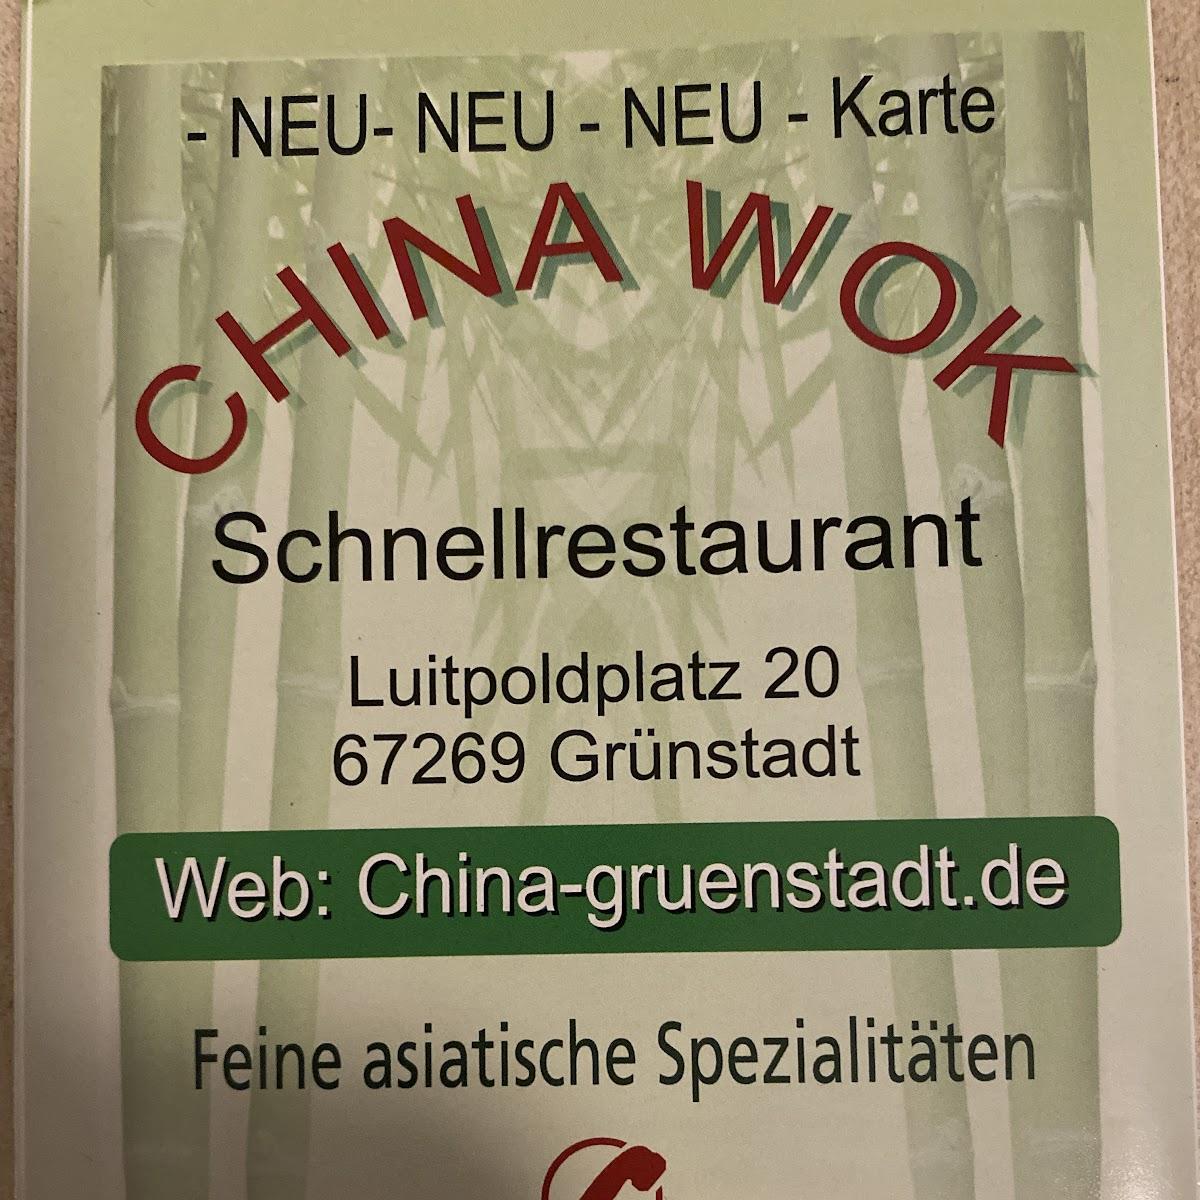 Restaurant "Asia Wok Imbiss" in Grünstadt